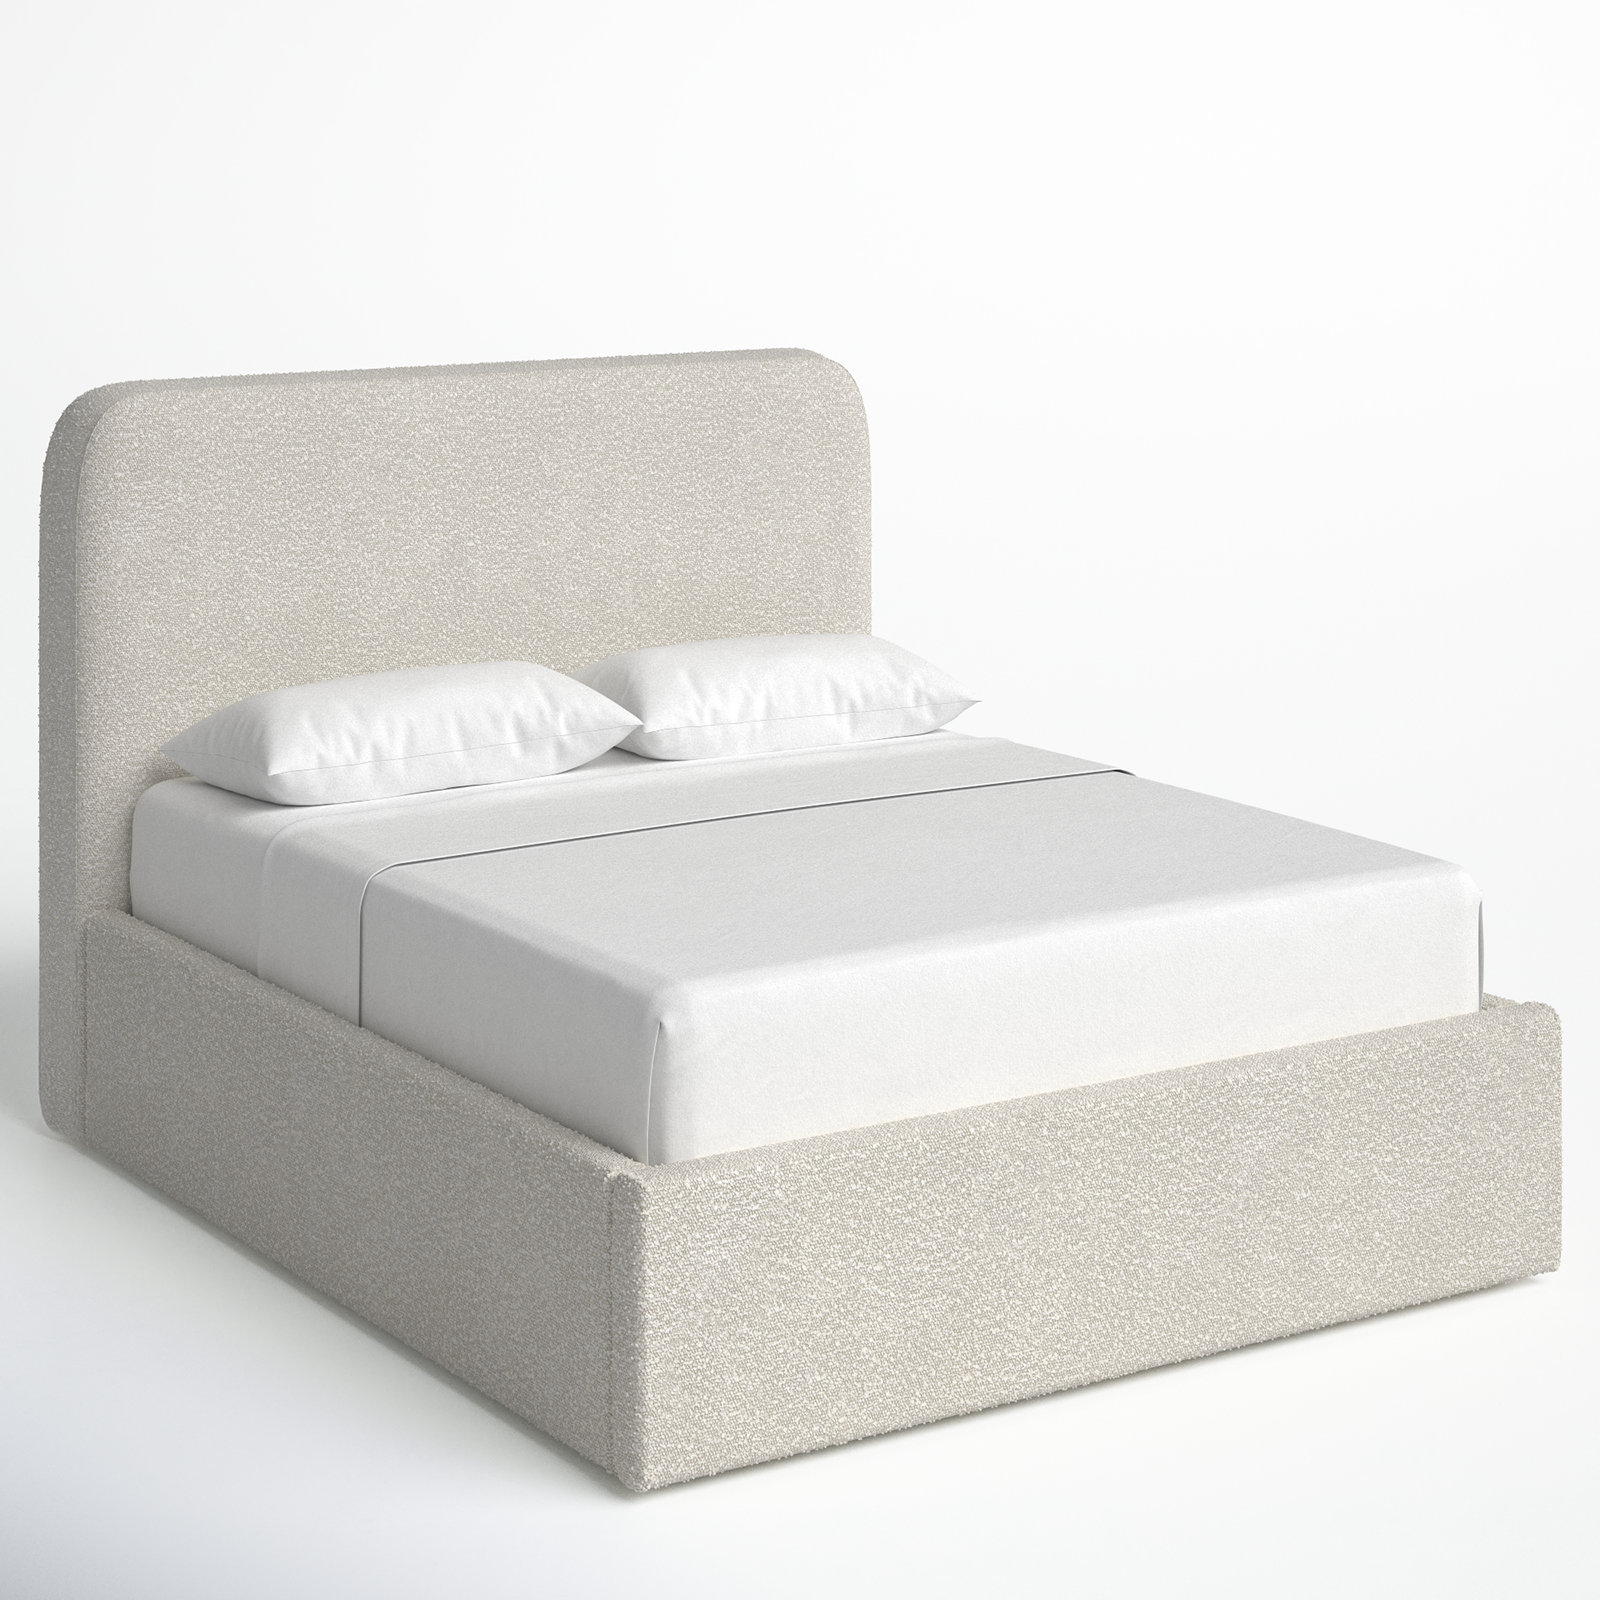 Joss & Main Bailee Upholstered Platform Bed & Reviews | Wayfair